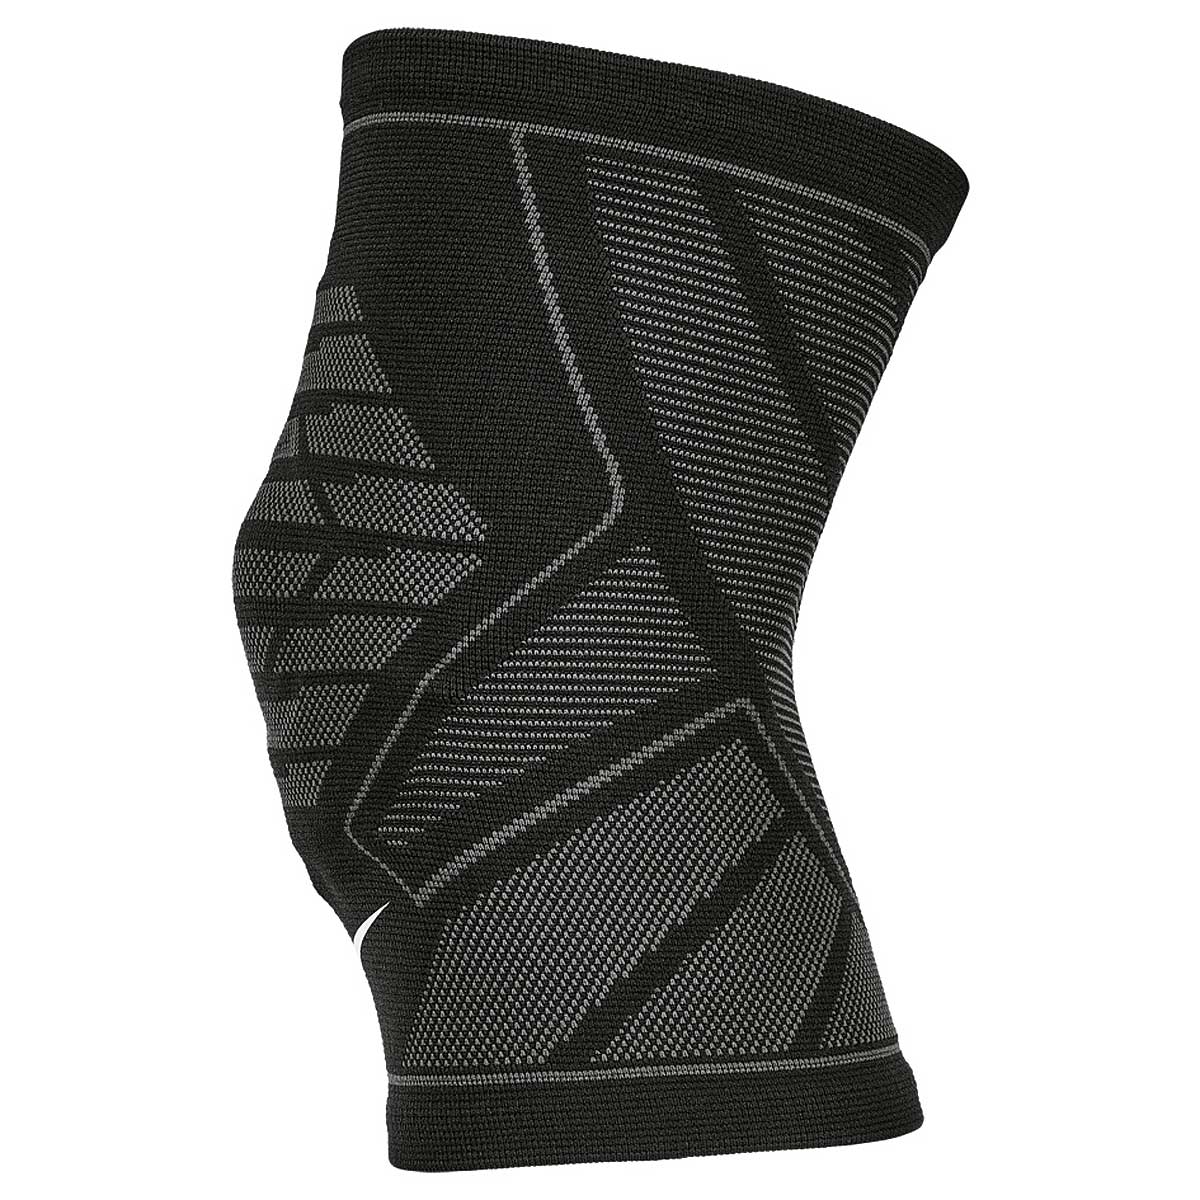 Molestar Mirar furtivamente De Verdad Buy Nike Pro Knitted Knee Sleeve for EUR 39.95 on KICKZ.com!